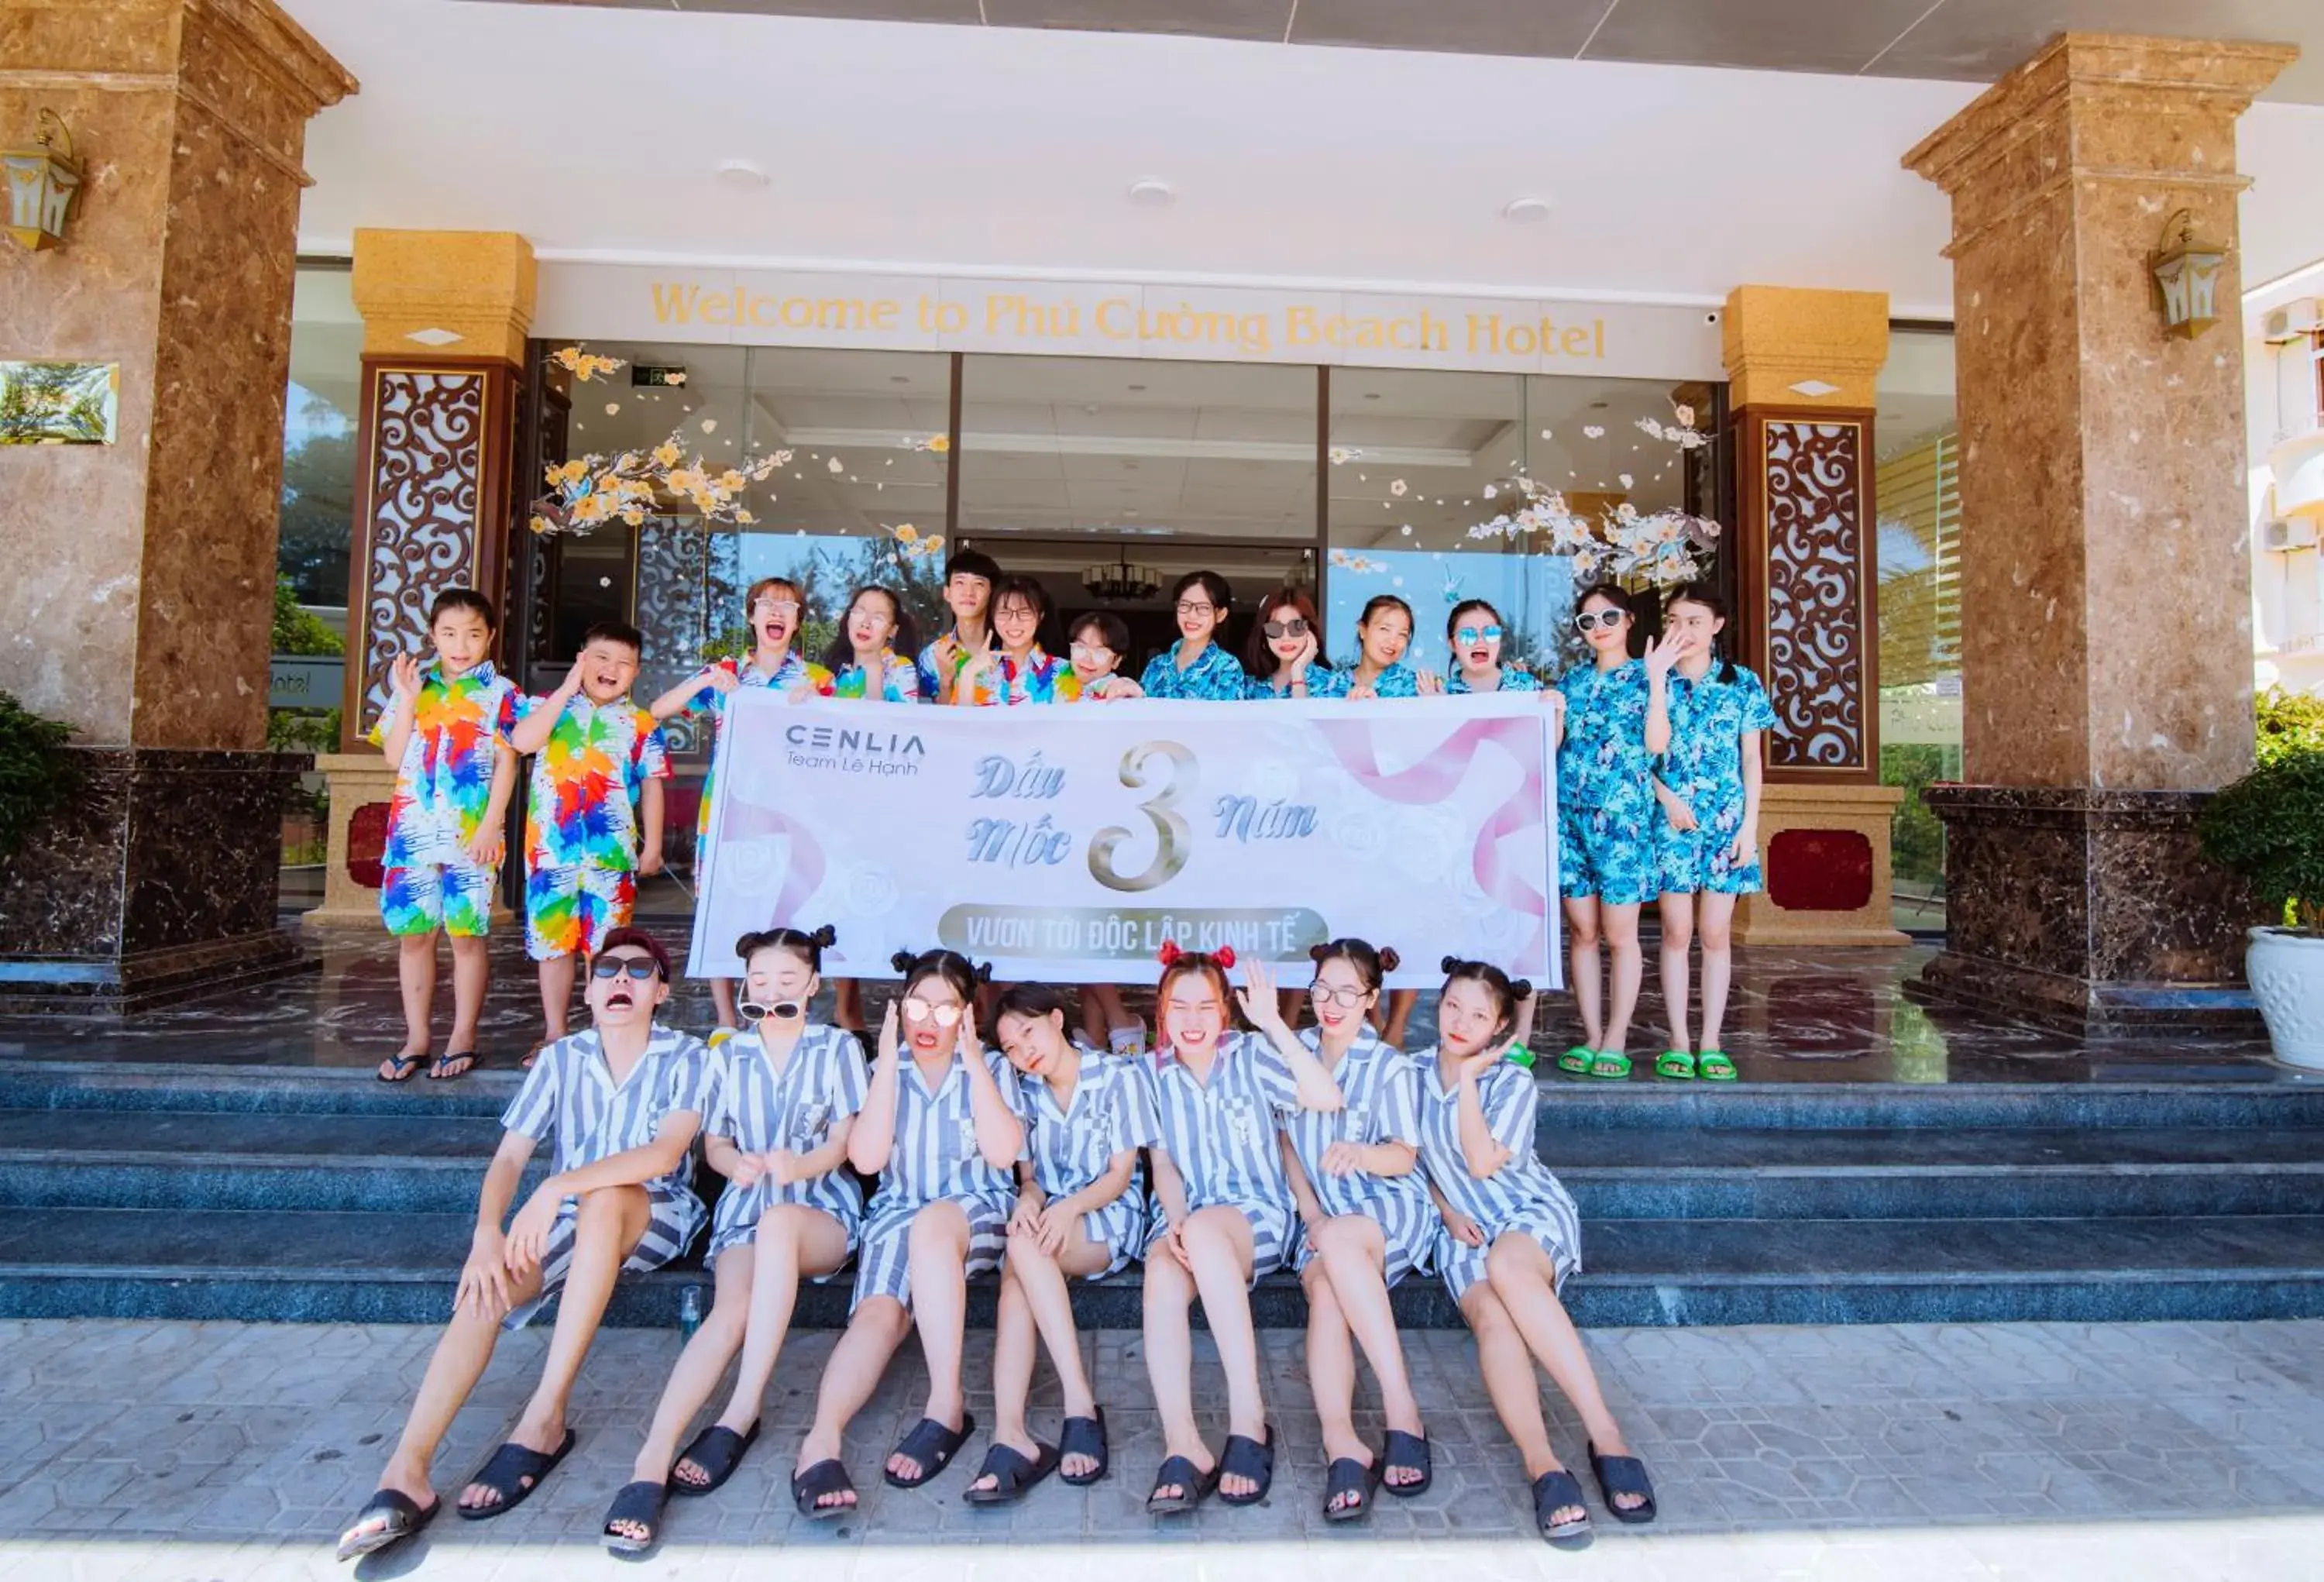 Facade/entrance in Phu Cuong Beach Hotel